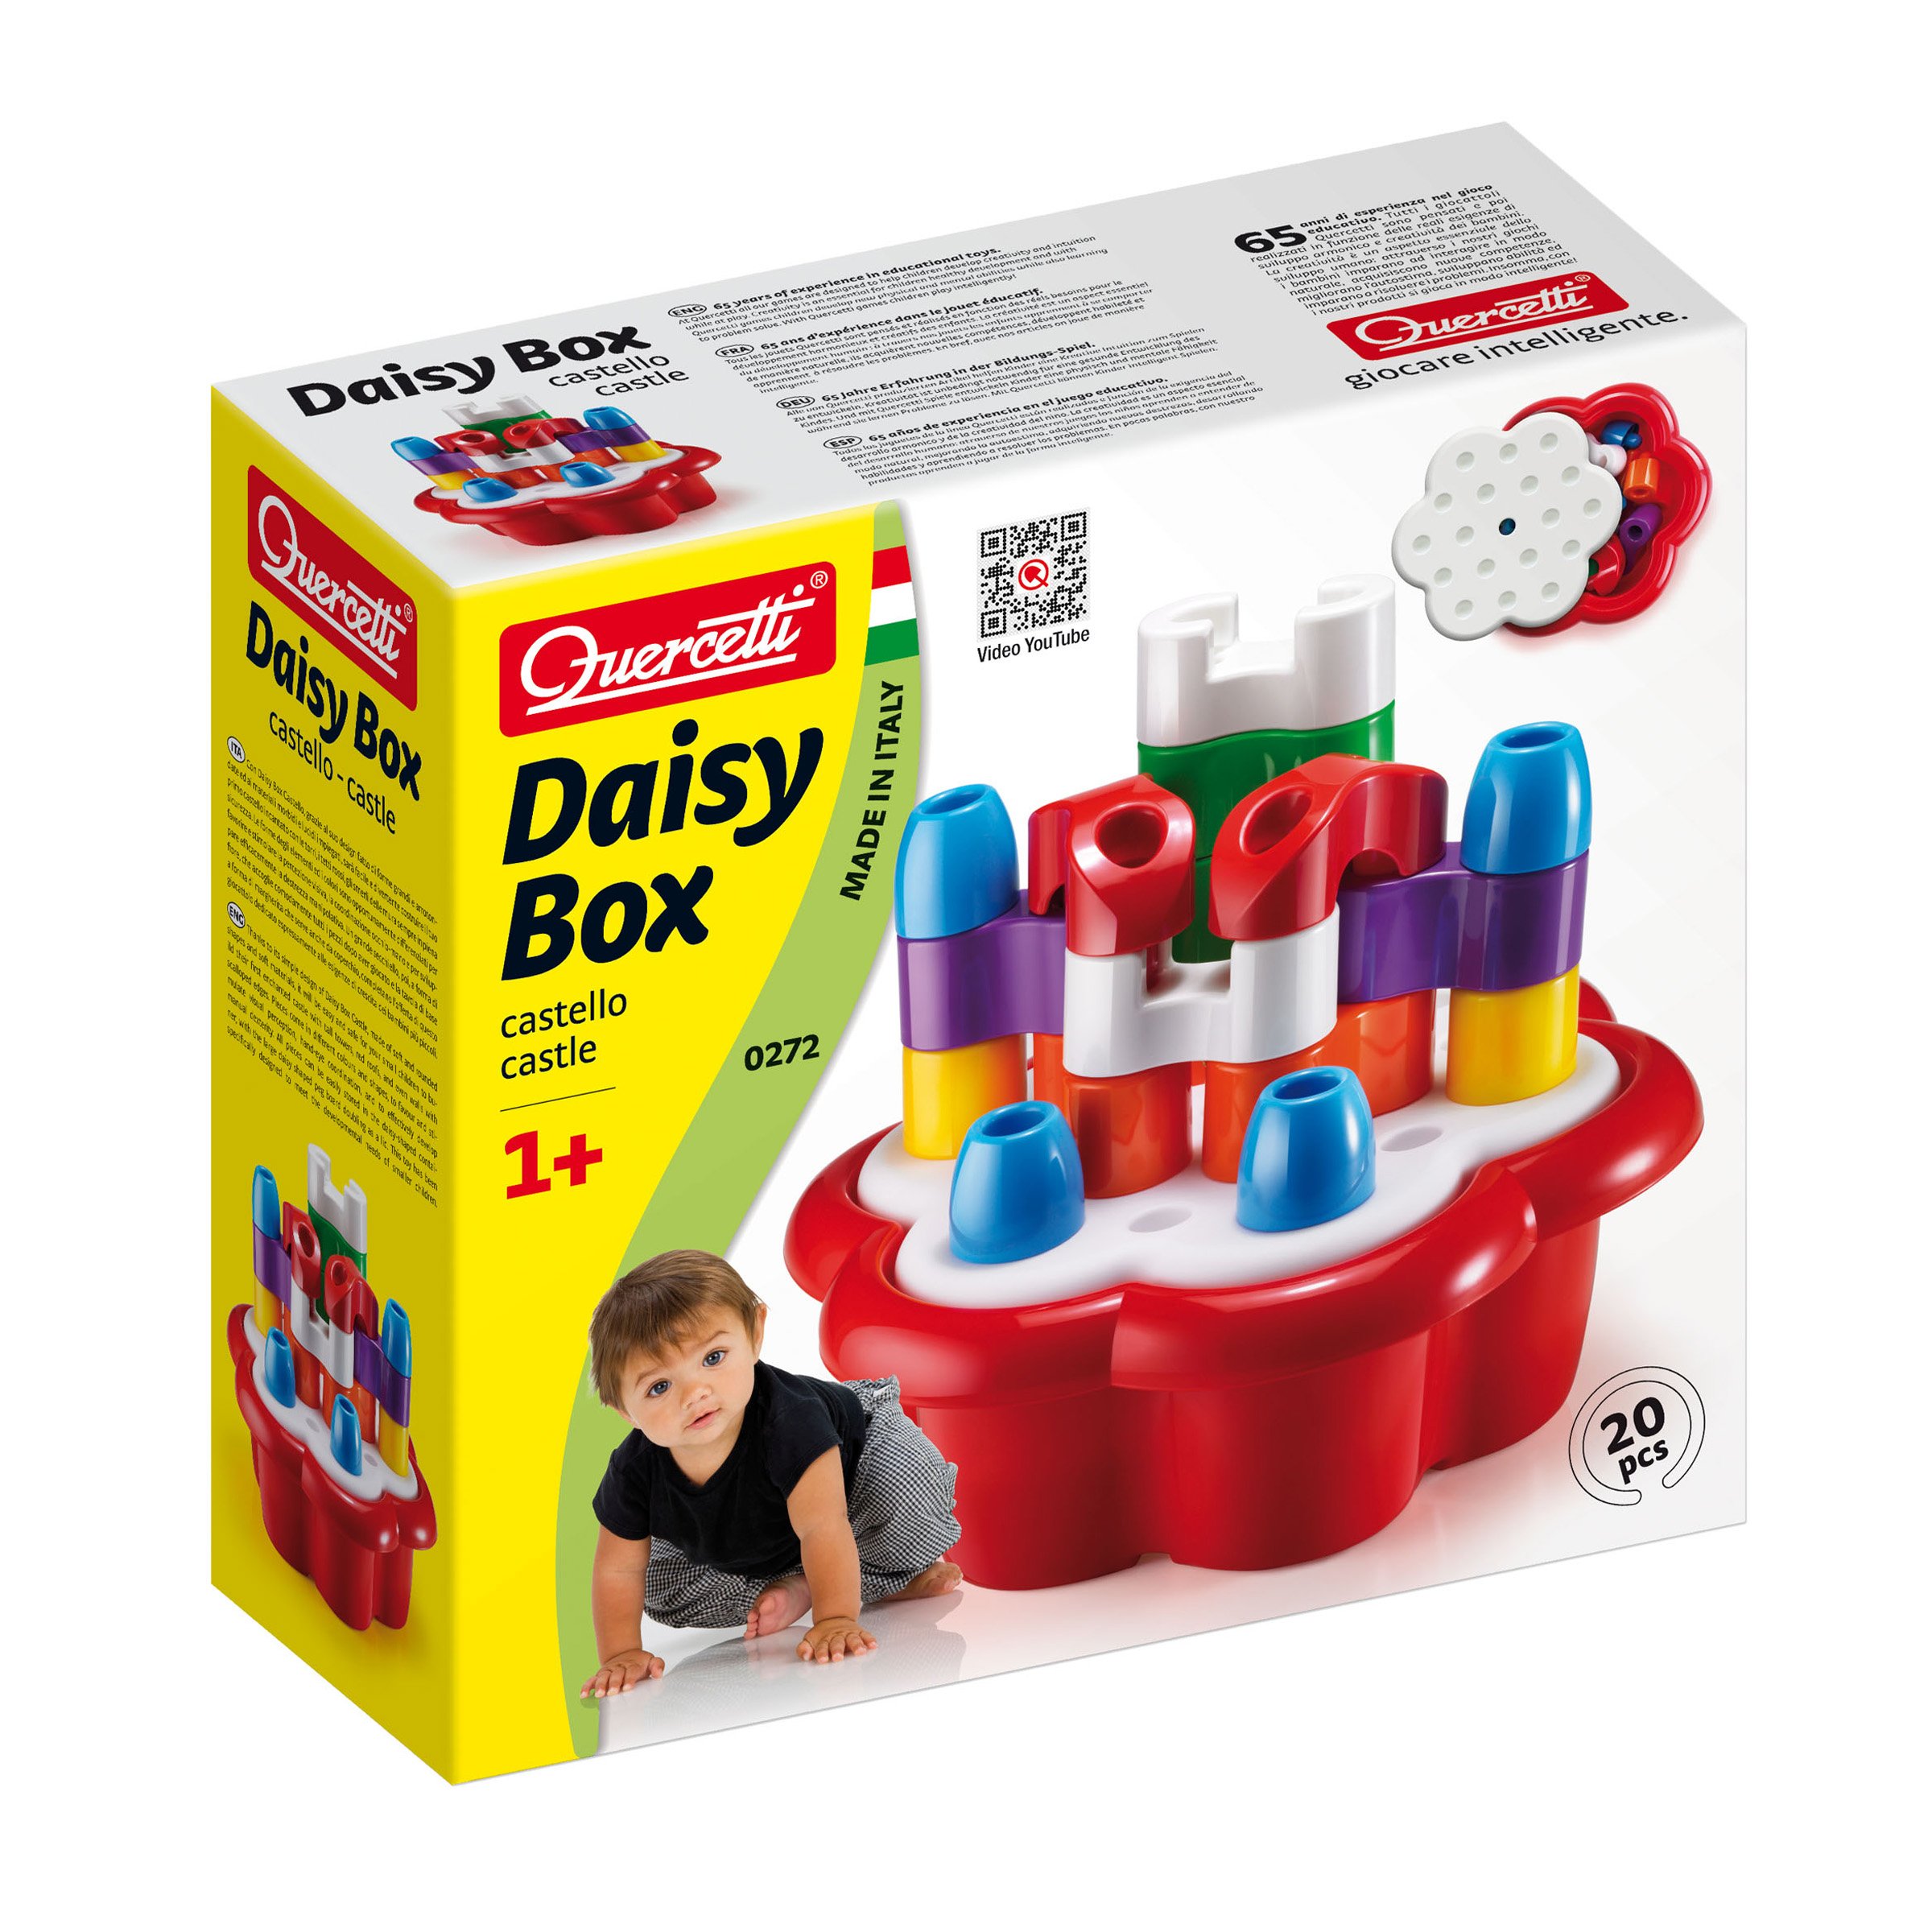 Daisy Box Castello